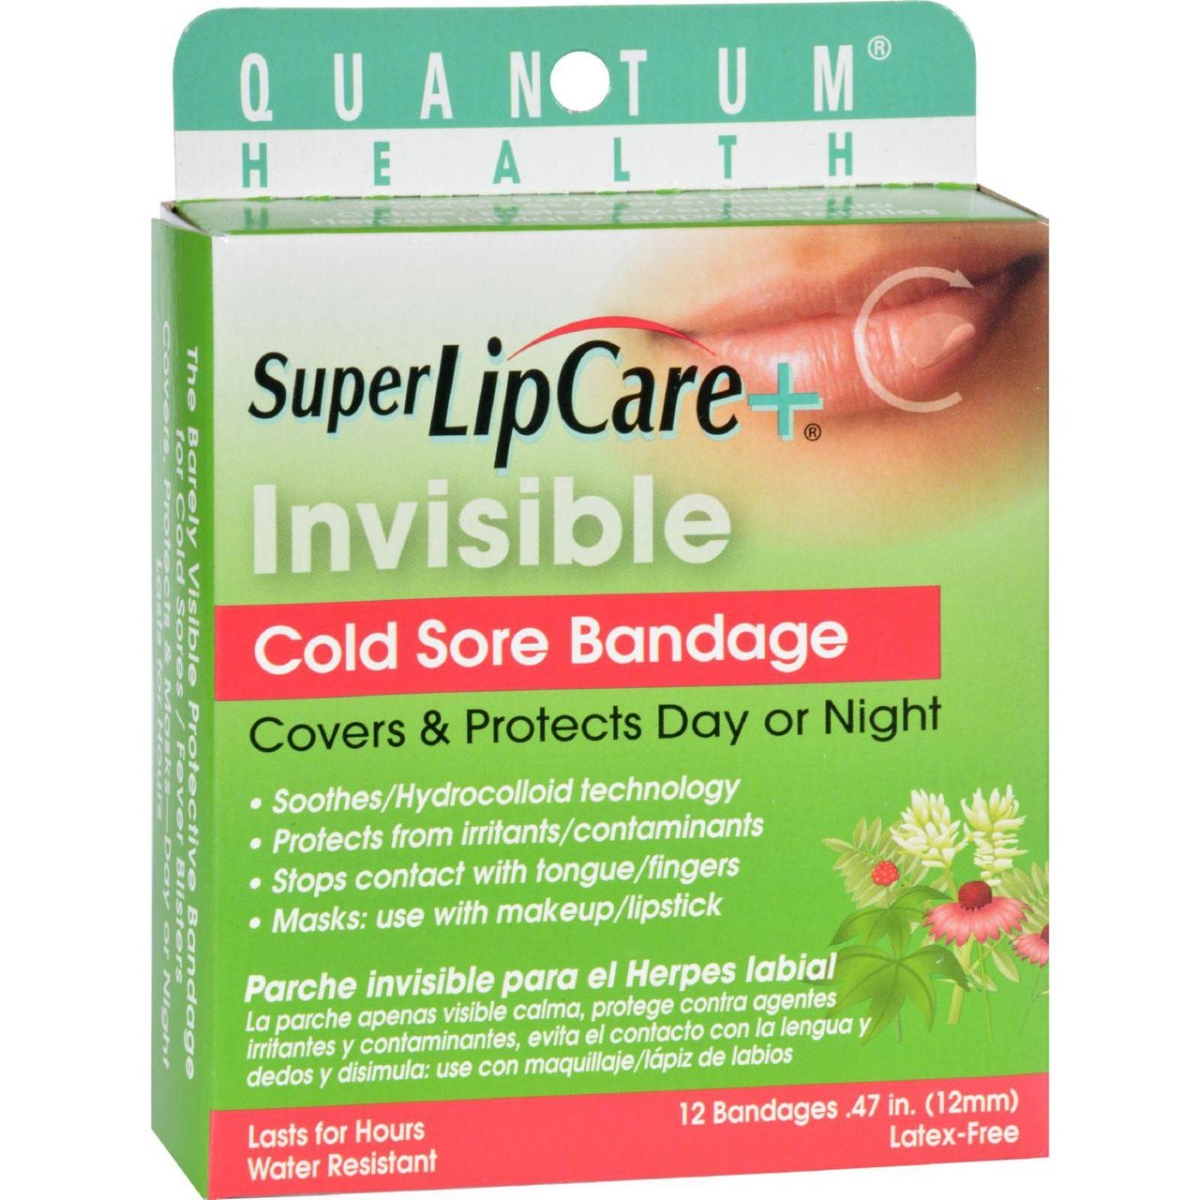 Hg1190743 Lipcare Plus Invisible Cold Sore Bandage - 12 Count